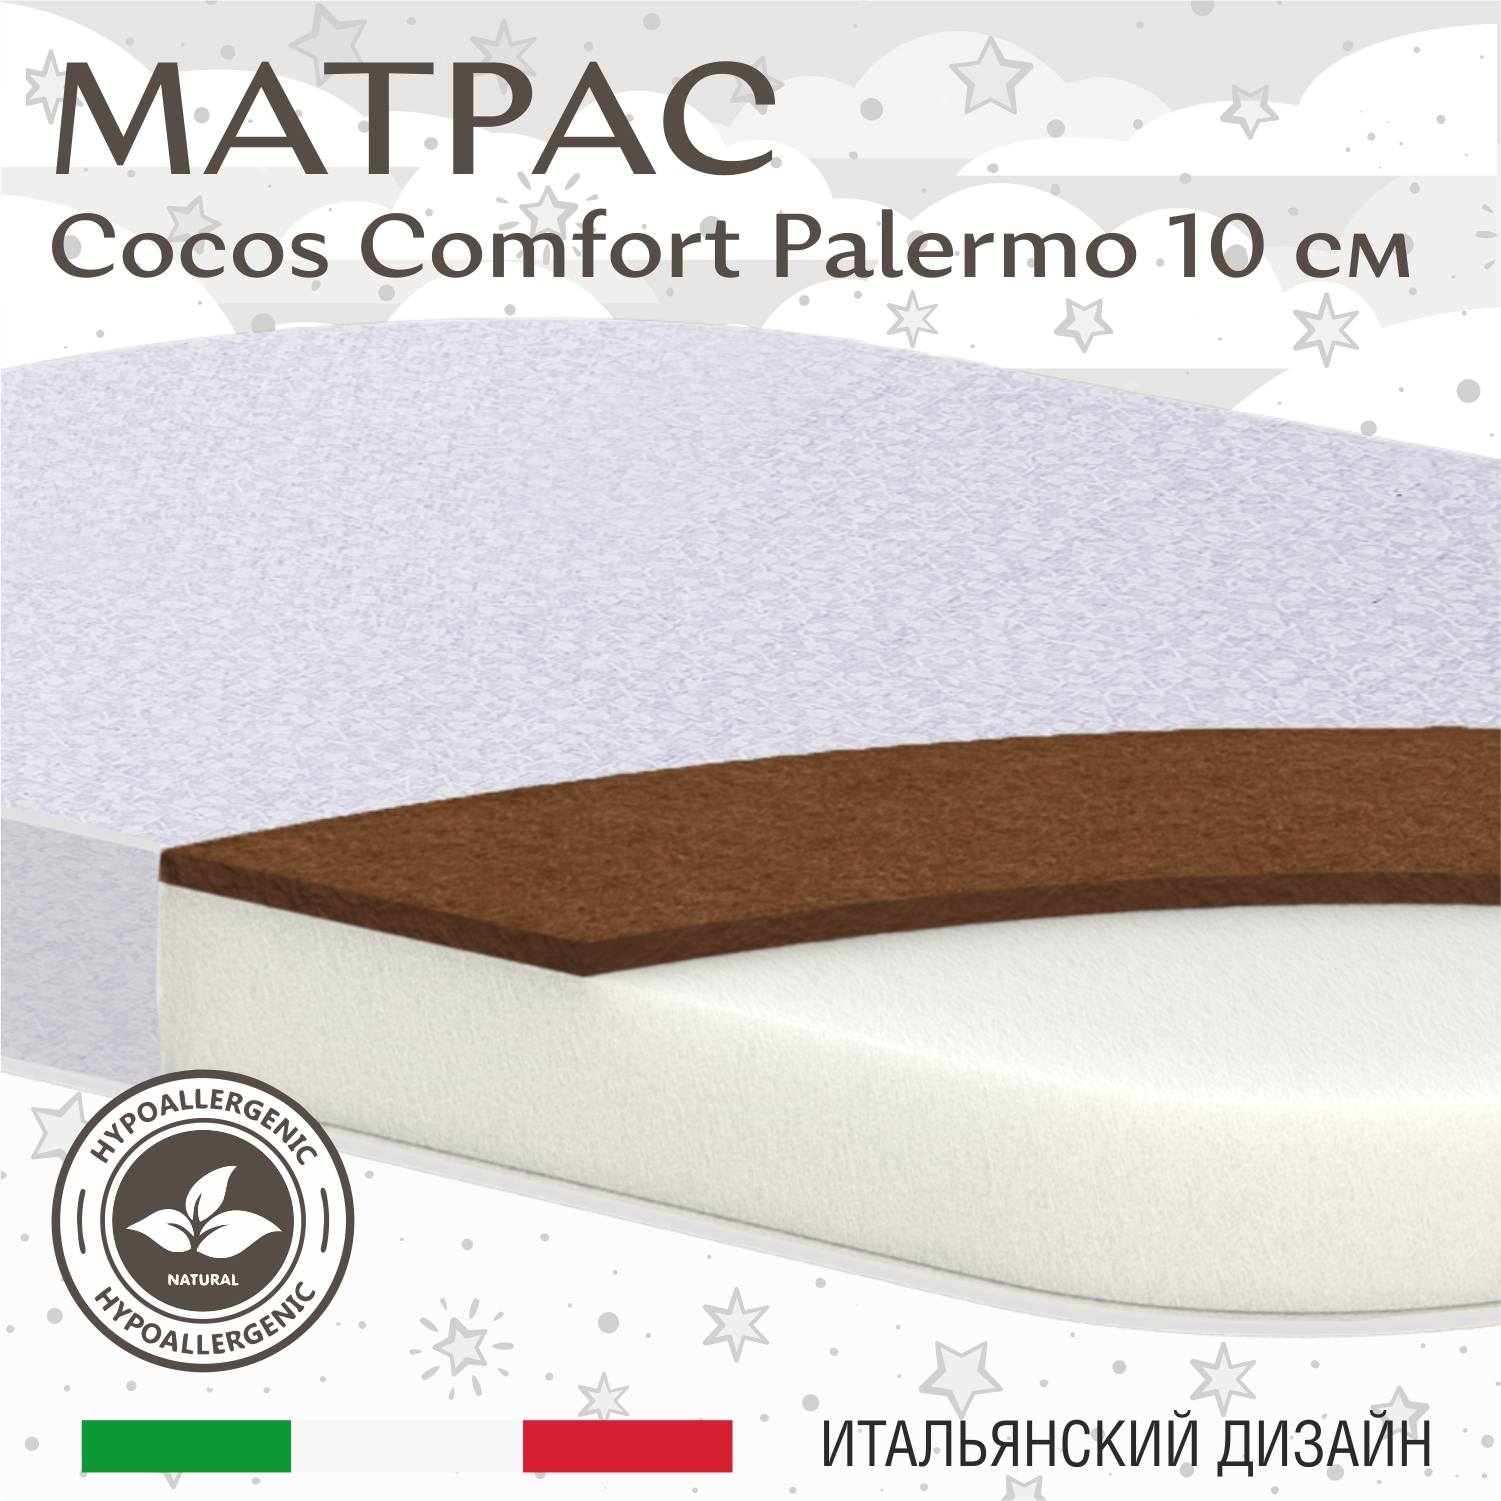 Матрас в кроватку Sweet Baby COCOS Comfort овальный Palermo 85X60х10 (экобязь) матрас в кроватку sweet baby cocos comfort овальный 125x75х10